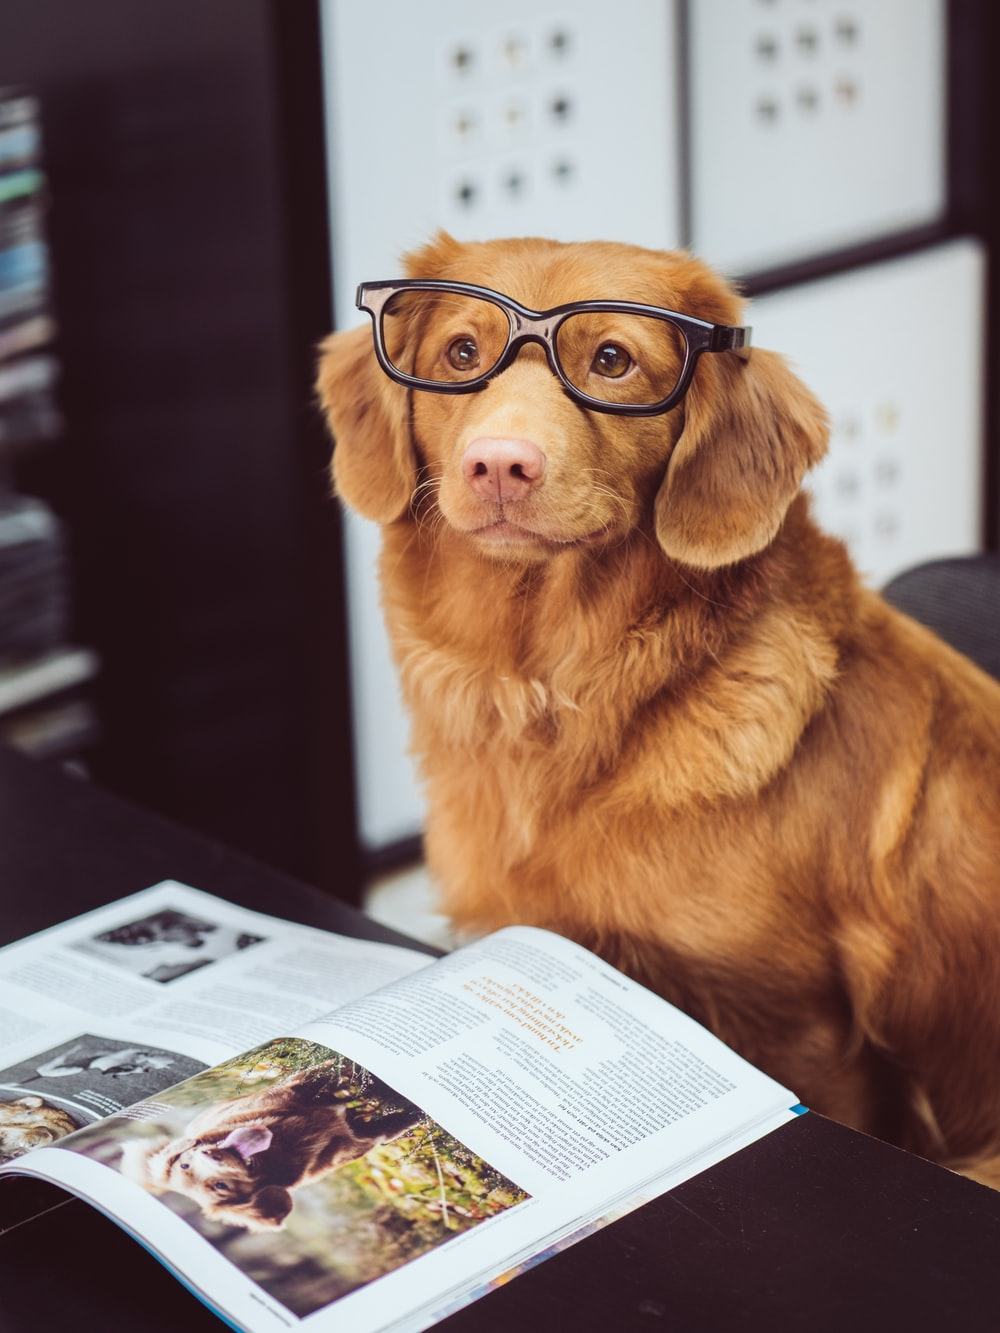 Hình ảnh chú chó đeo kính học tập